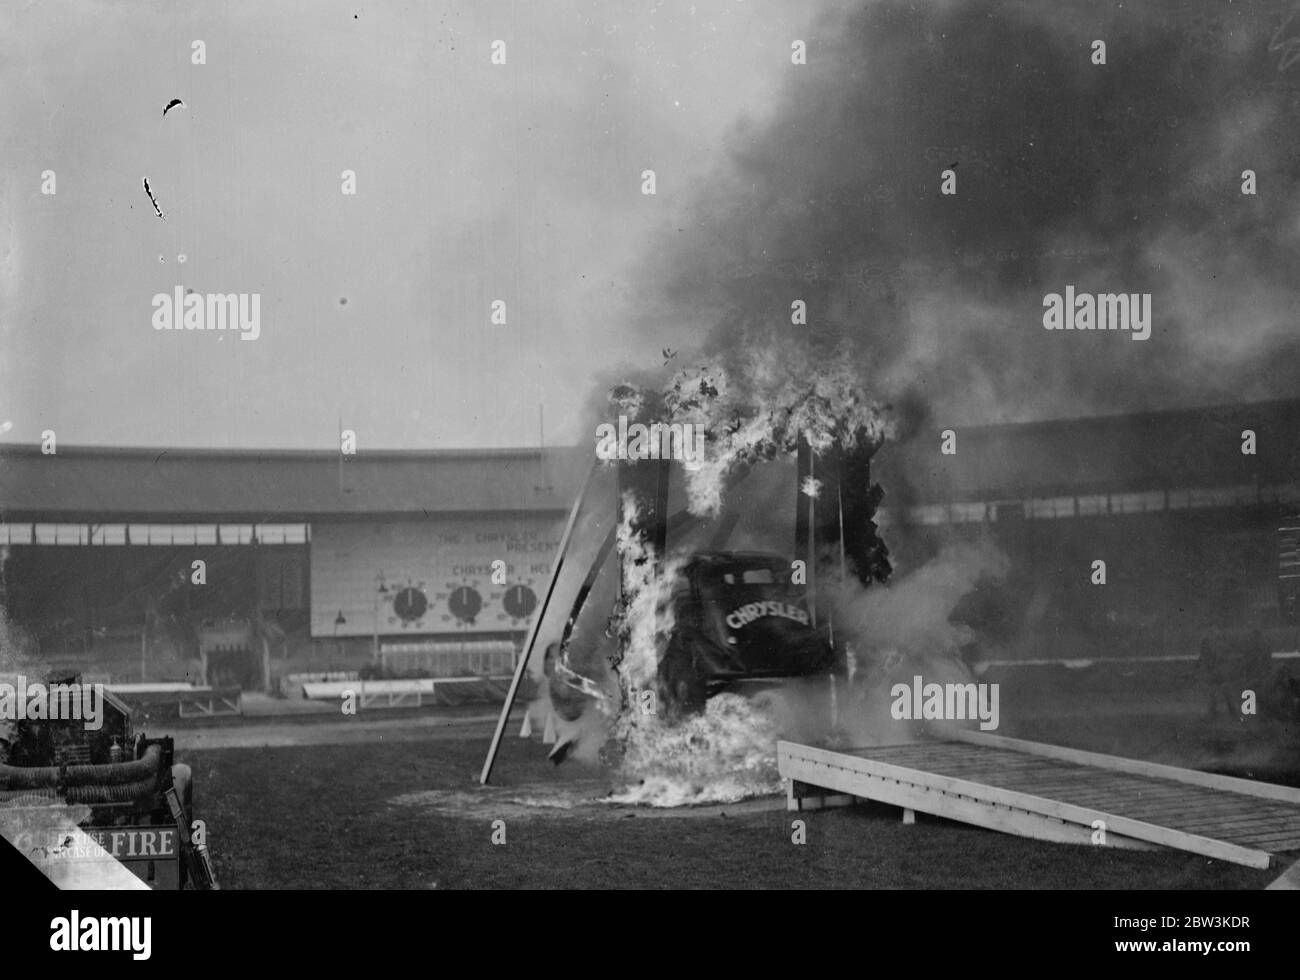 Hell les pilotes testent des voitures à White City . Plongée de la voiture à travers une barricade flamboyante à la ville Blanche . 16 octobre 1935 Banque D'Images